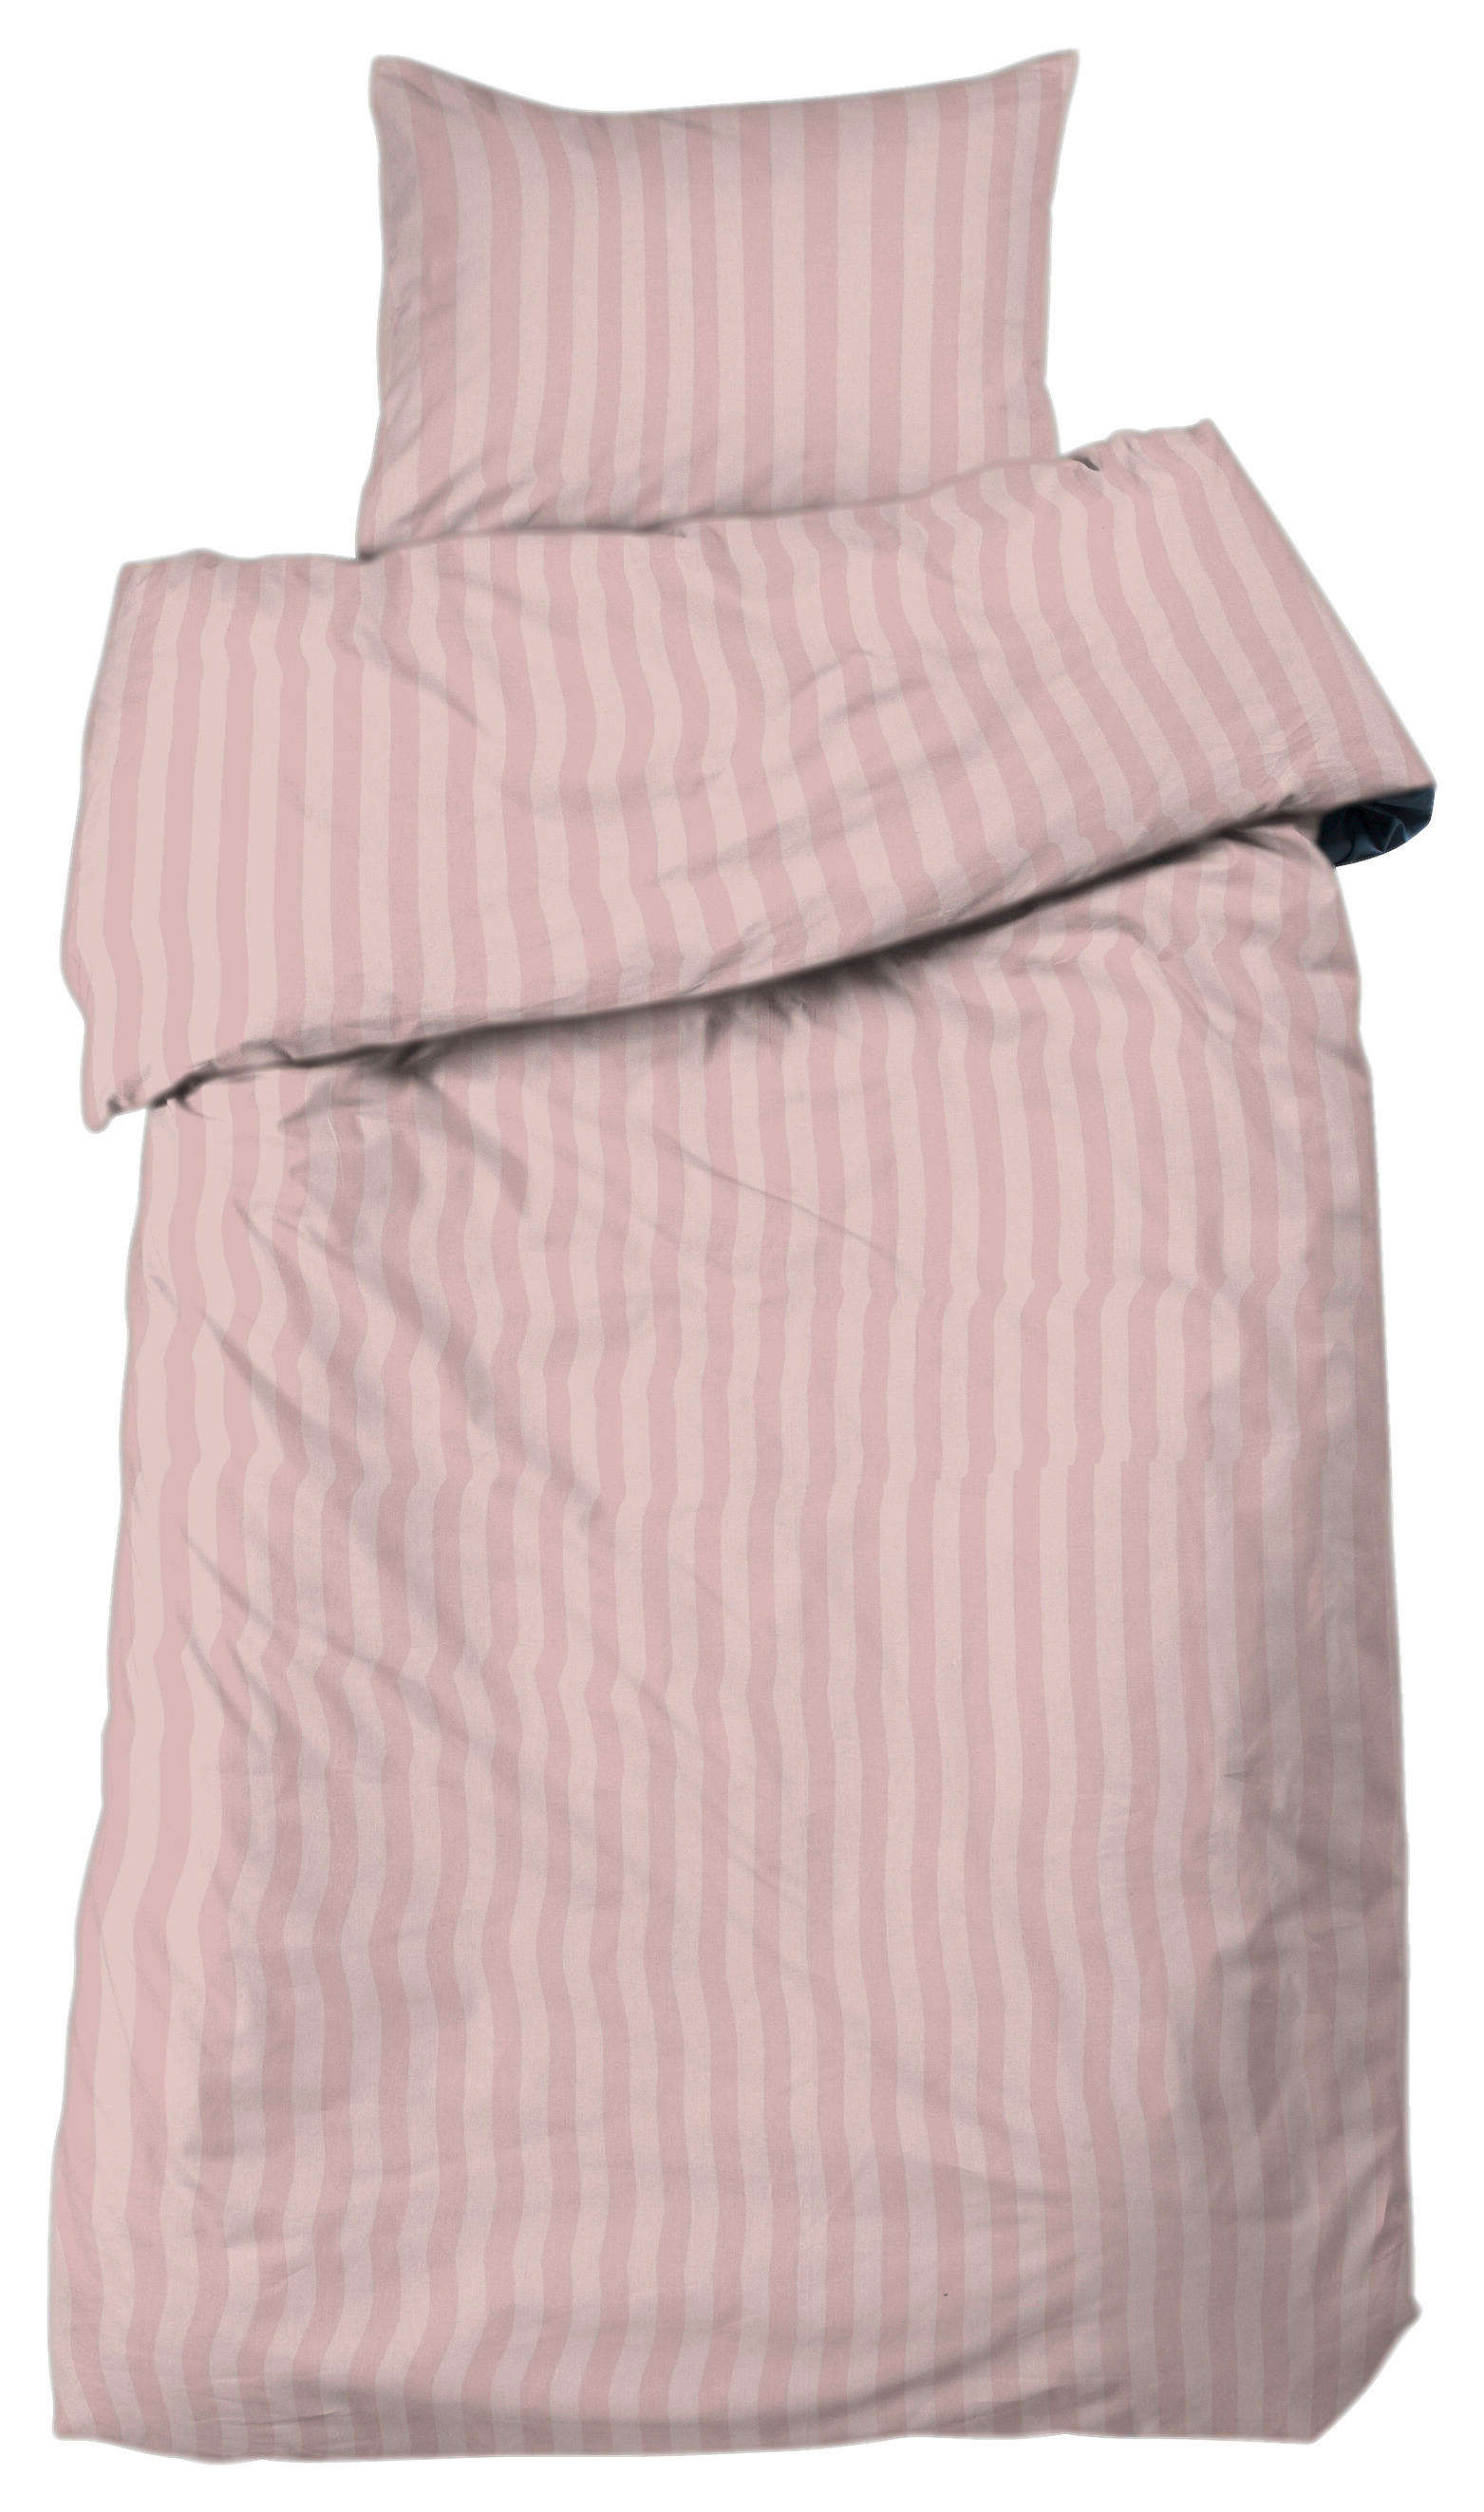 PÅSLAKANSET 150/210 cm  - rosa, Basics, textil (150/210cm)